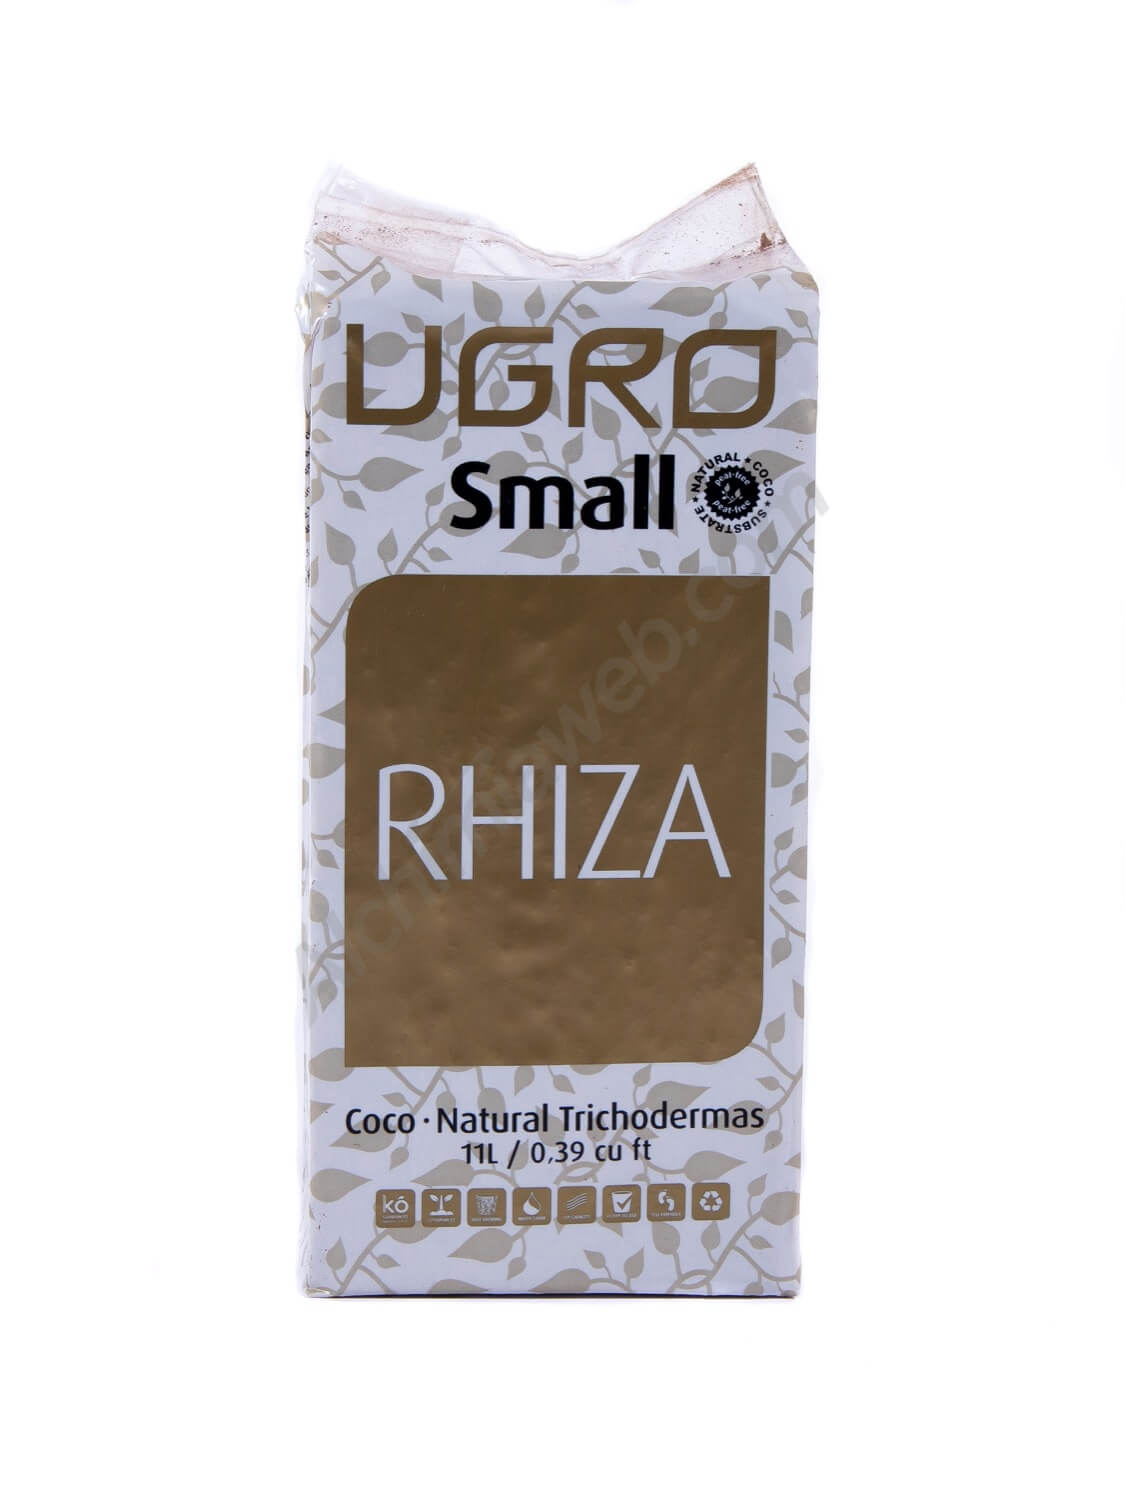 UGro Small Rhiza. Coco compressée avec mycorrhizes